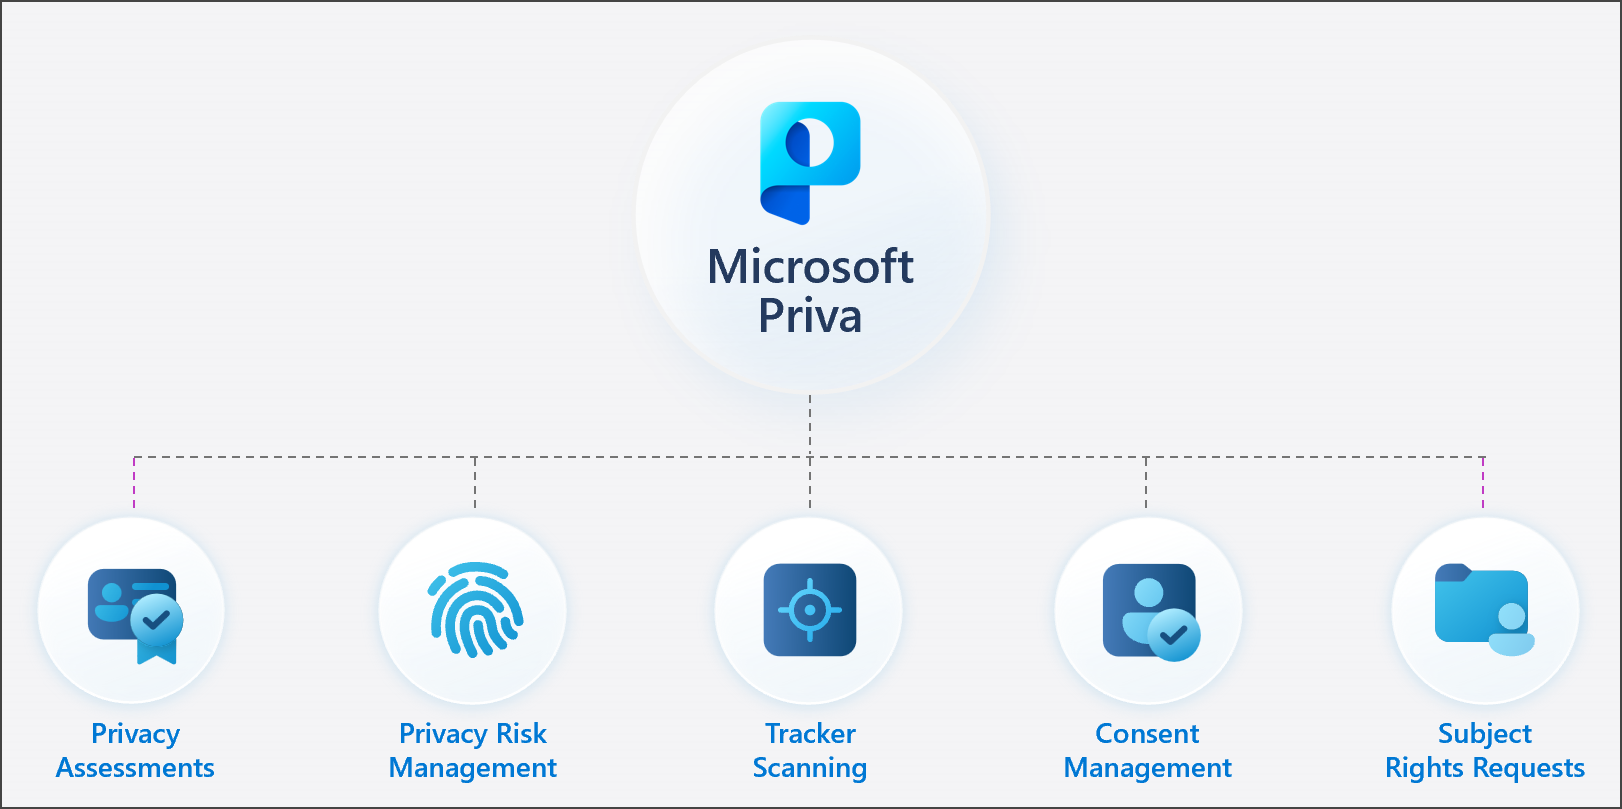 Illustrazione della famiglia di soluzioni Microsoft Priva.